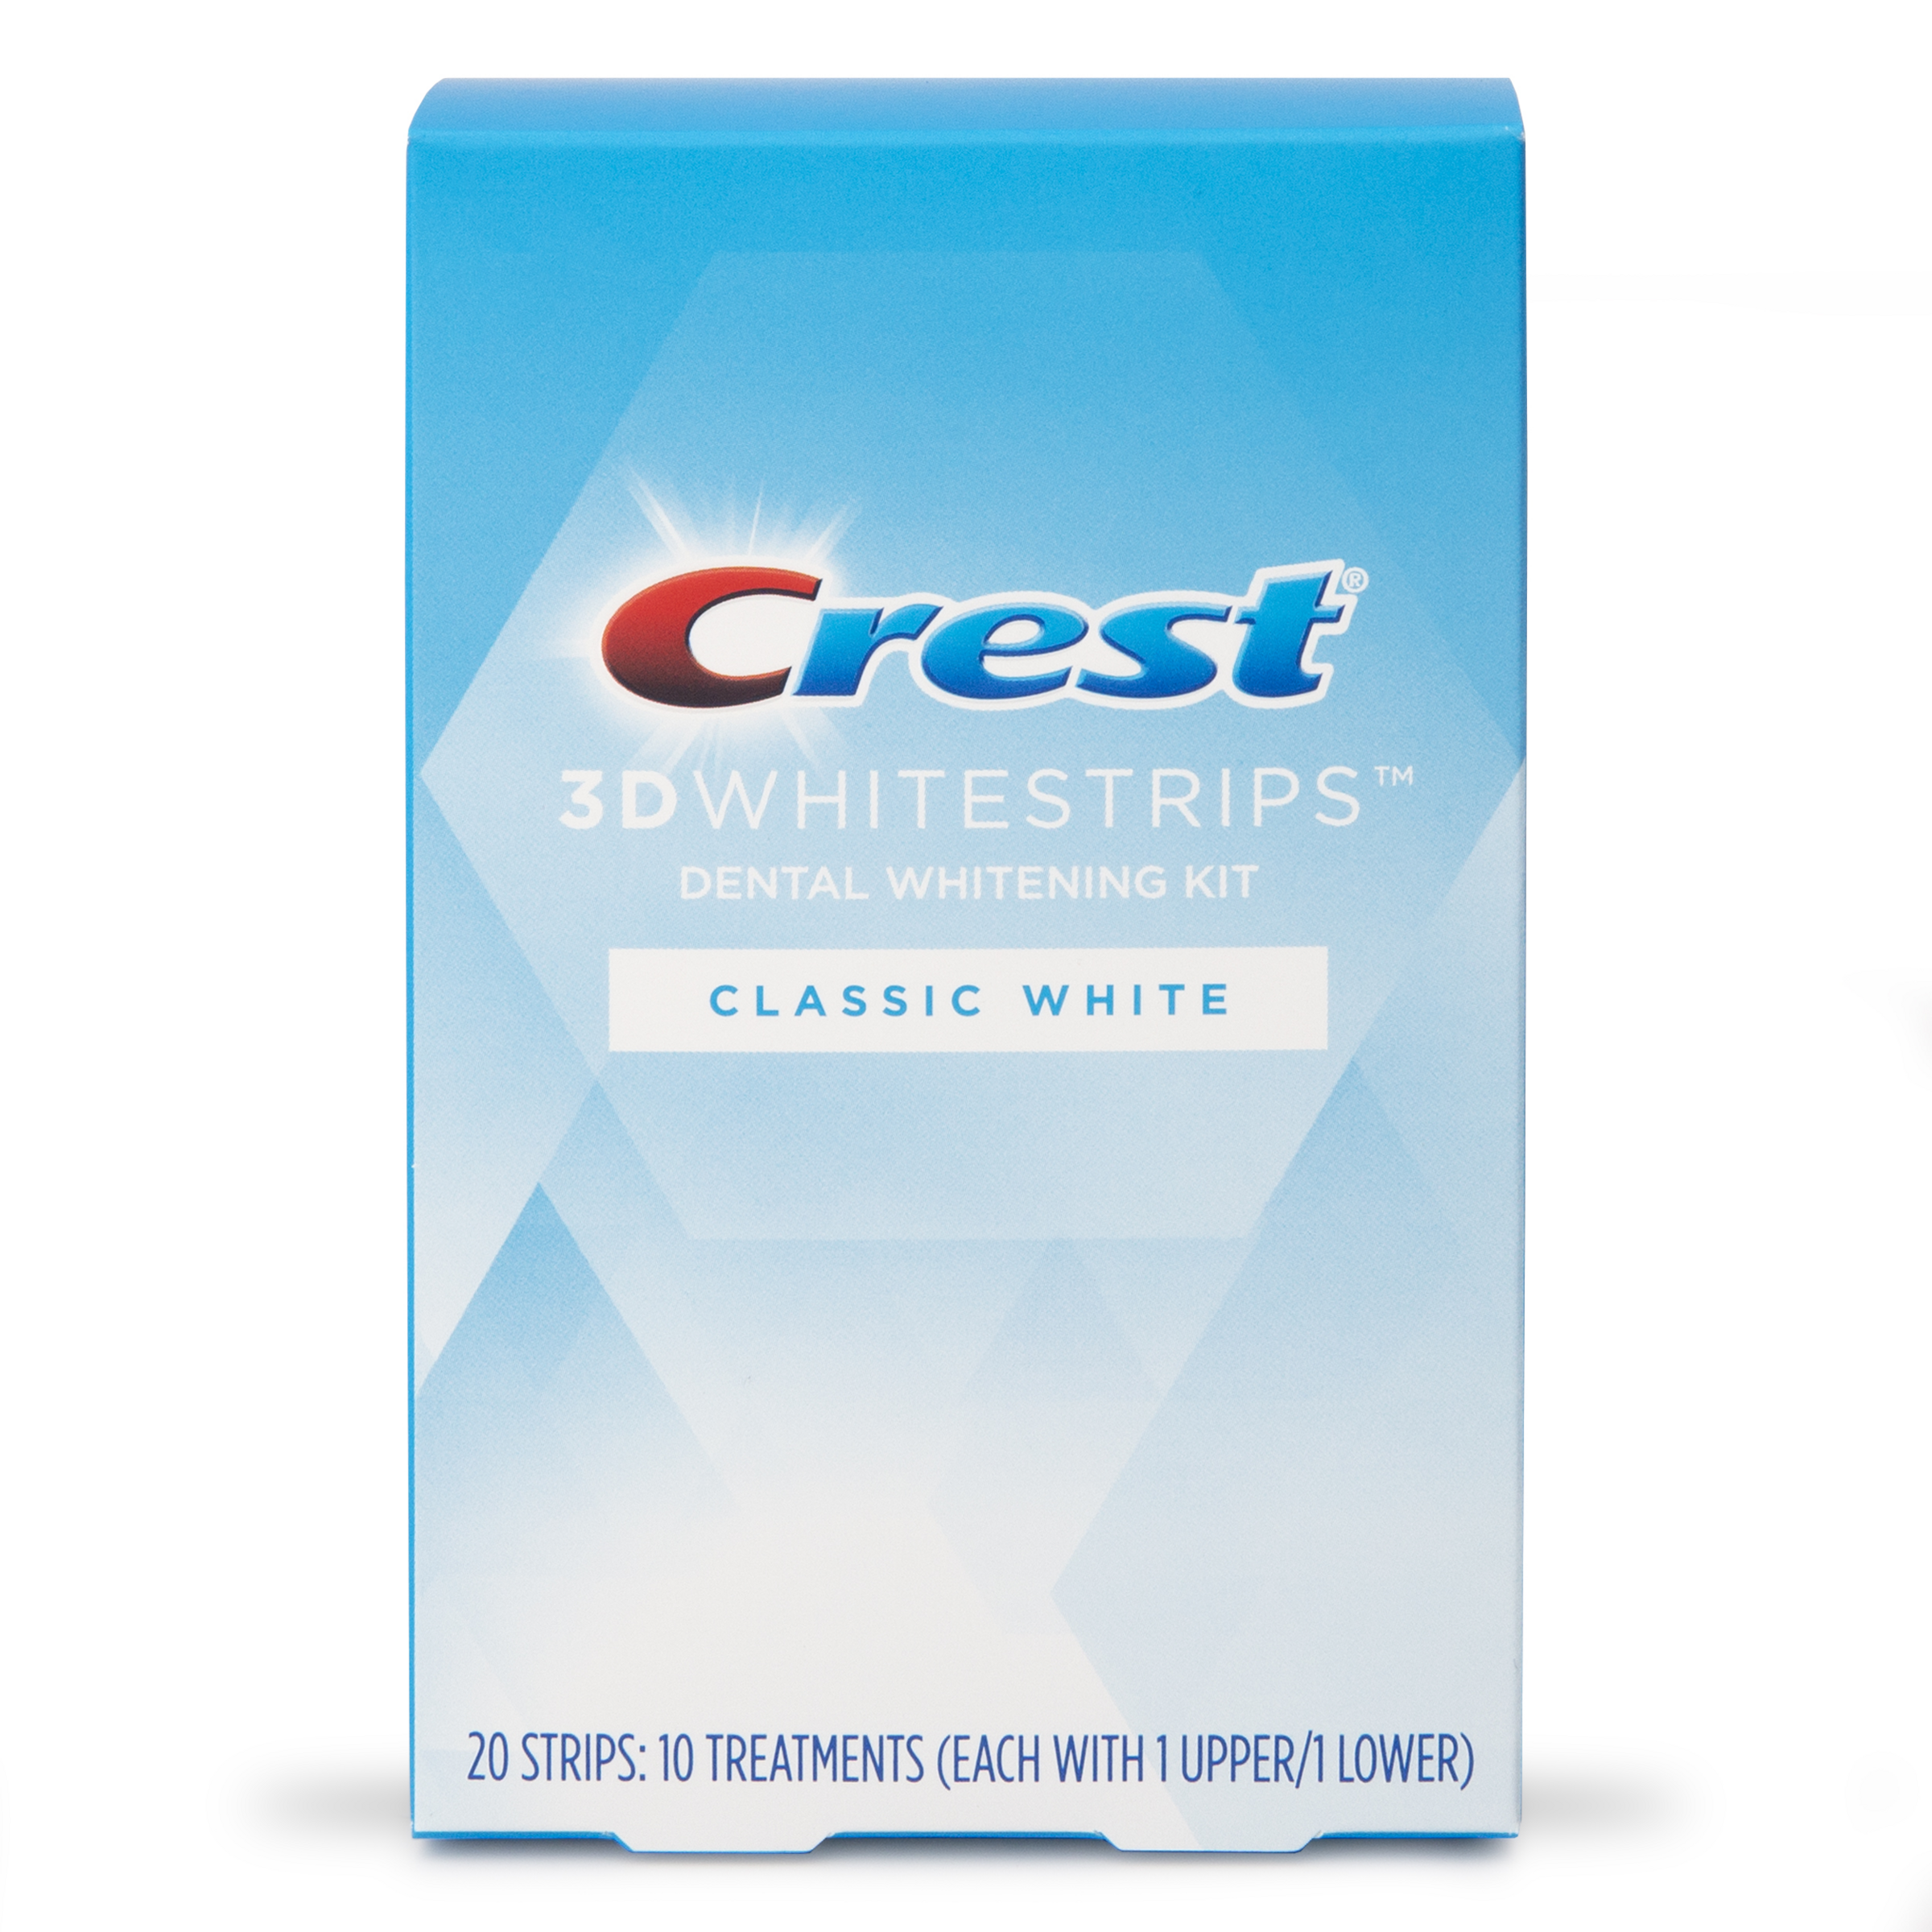 Crest 3 D Whitestrips Classic White Dental Whitening Kit